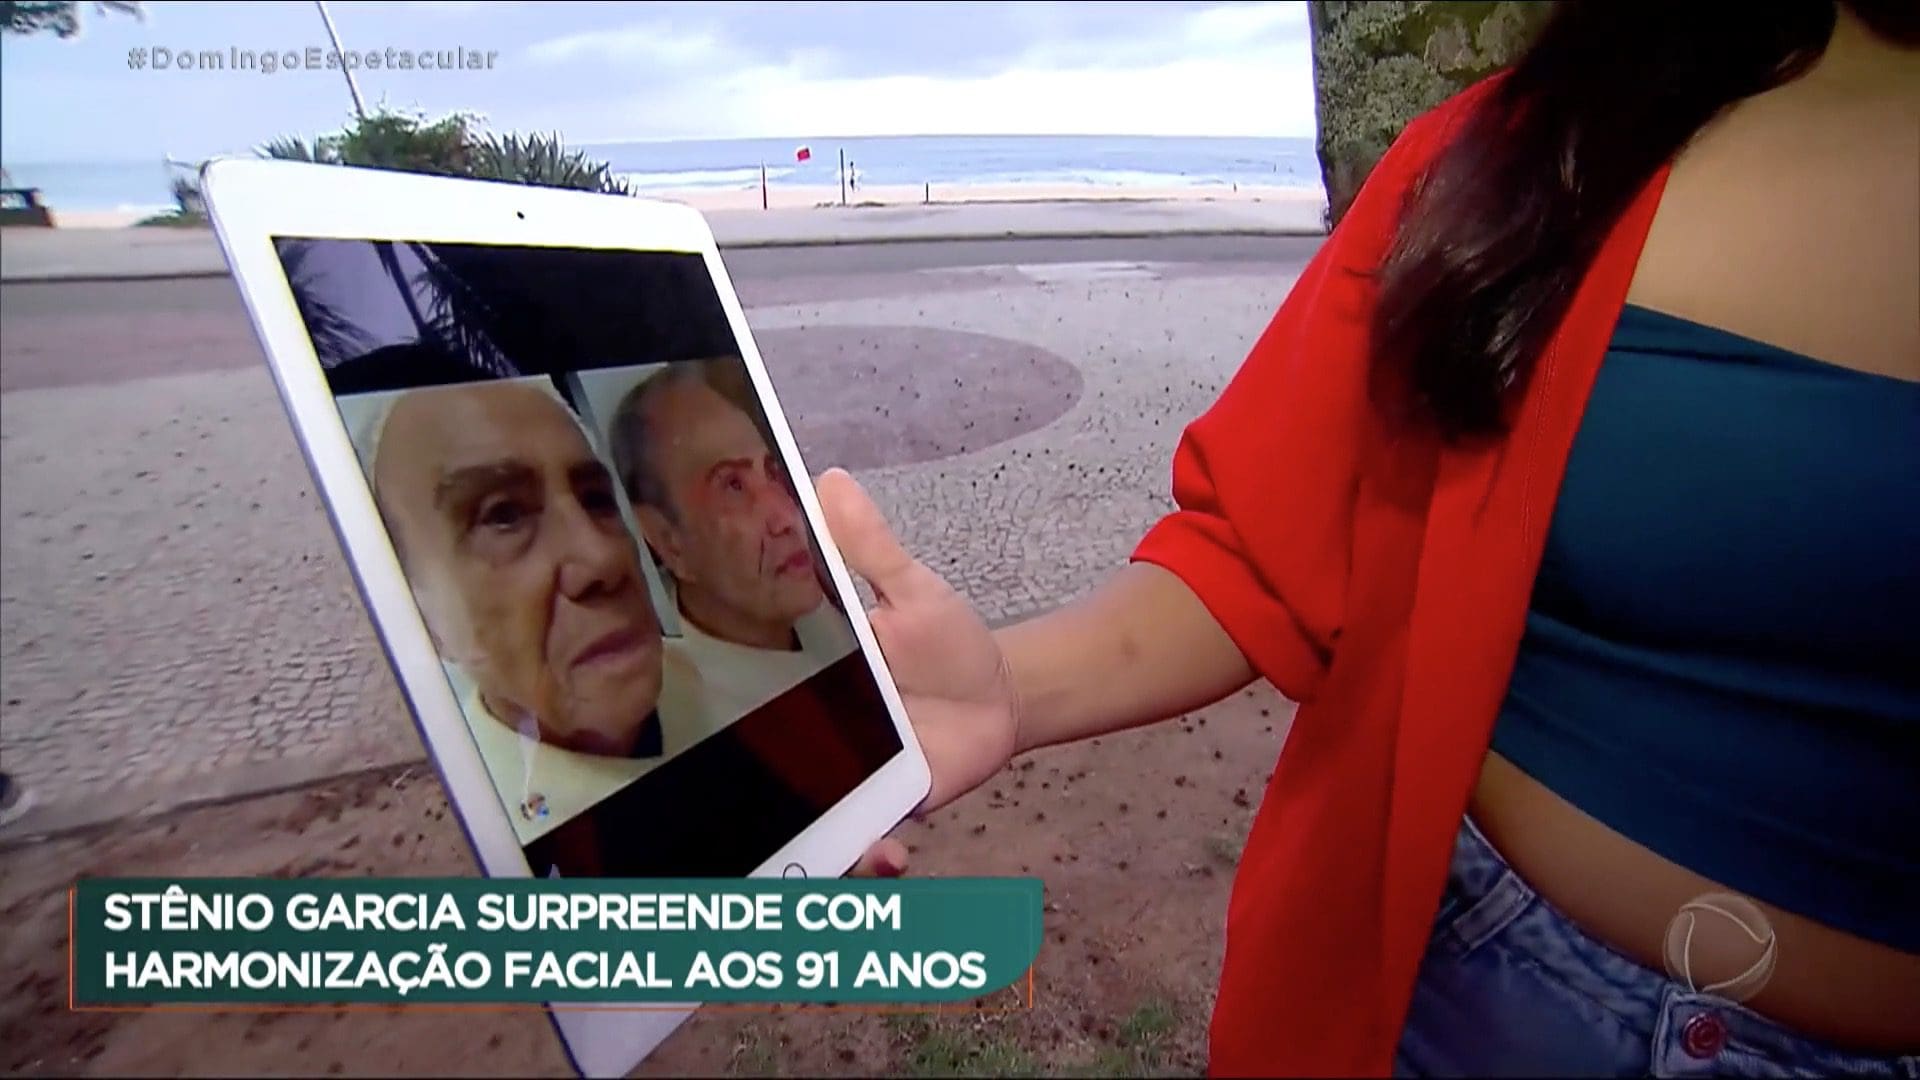 Ator Stênio Garcia faz sucesso na Internet após harmonização facial